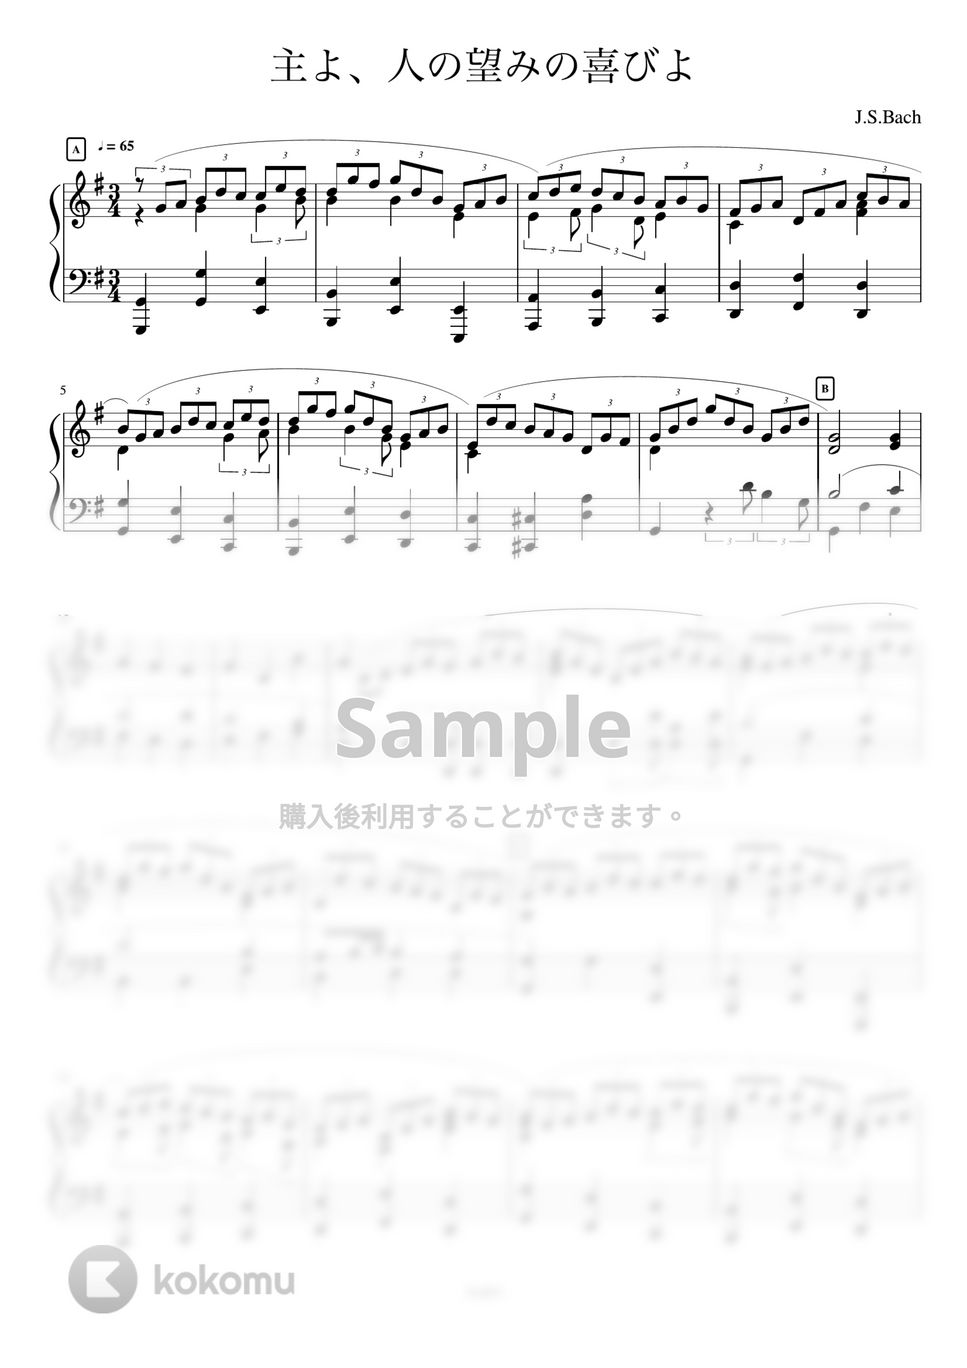 ヨハン・セバスチャン・バッハ - 主よ、人の望みの喜びよ (ピアノソロ、クラシック、主よ人の望みの喜びよ) by AsukA818